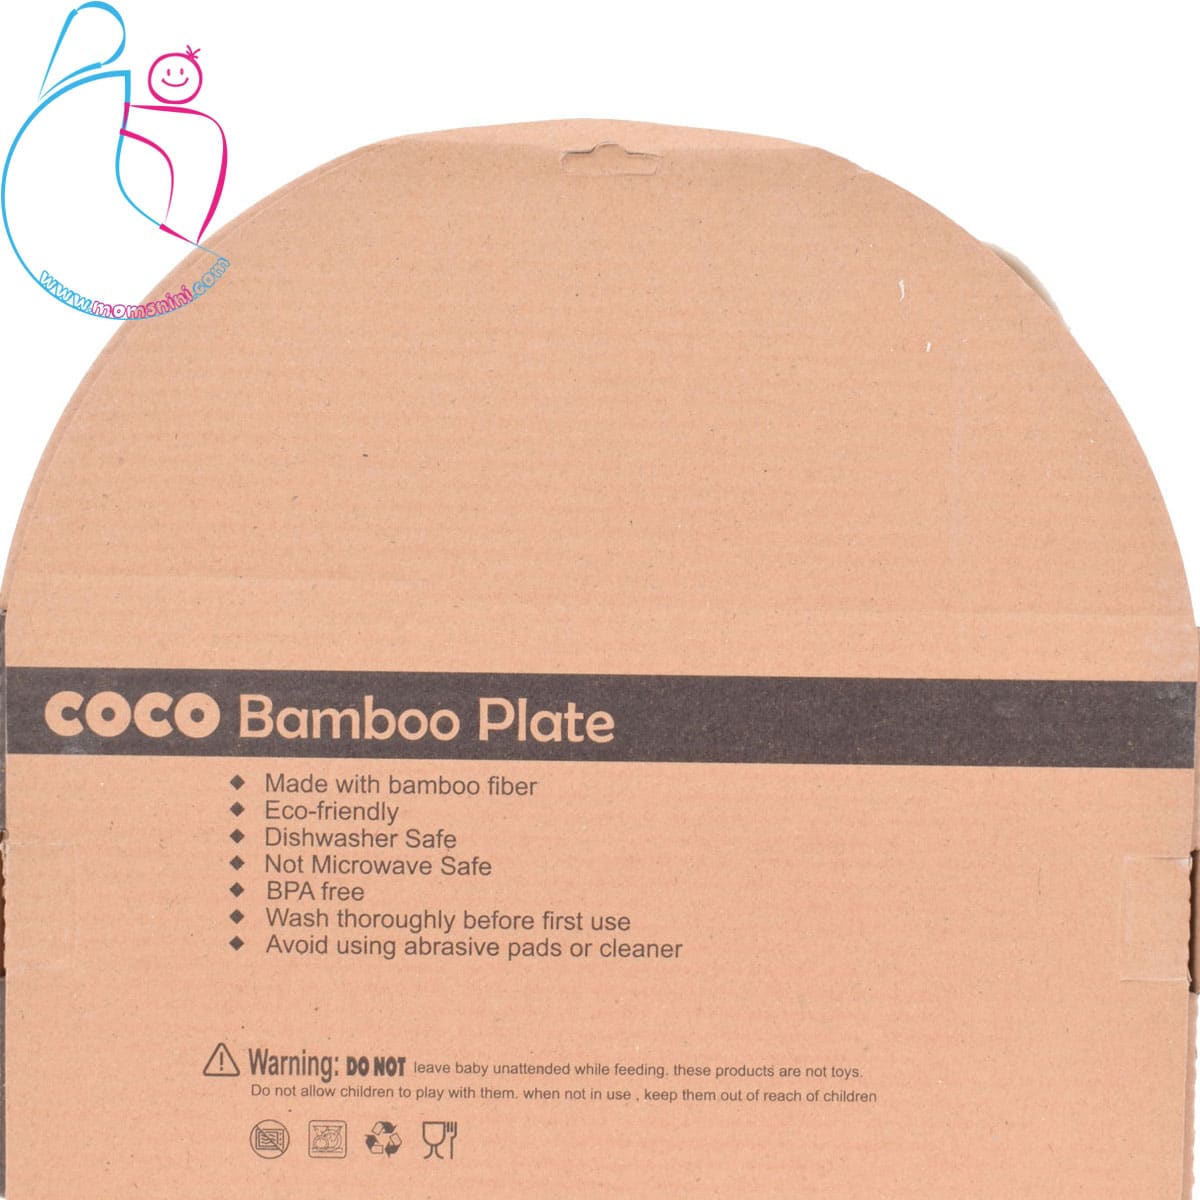 ست ظرف غذا ۵ تکه بامبو مدل coco bamboo